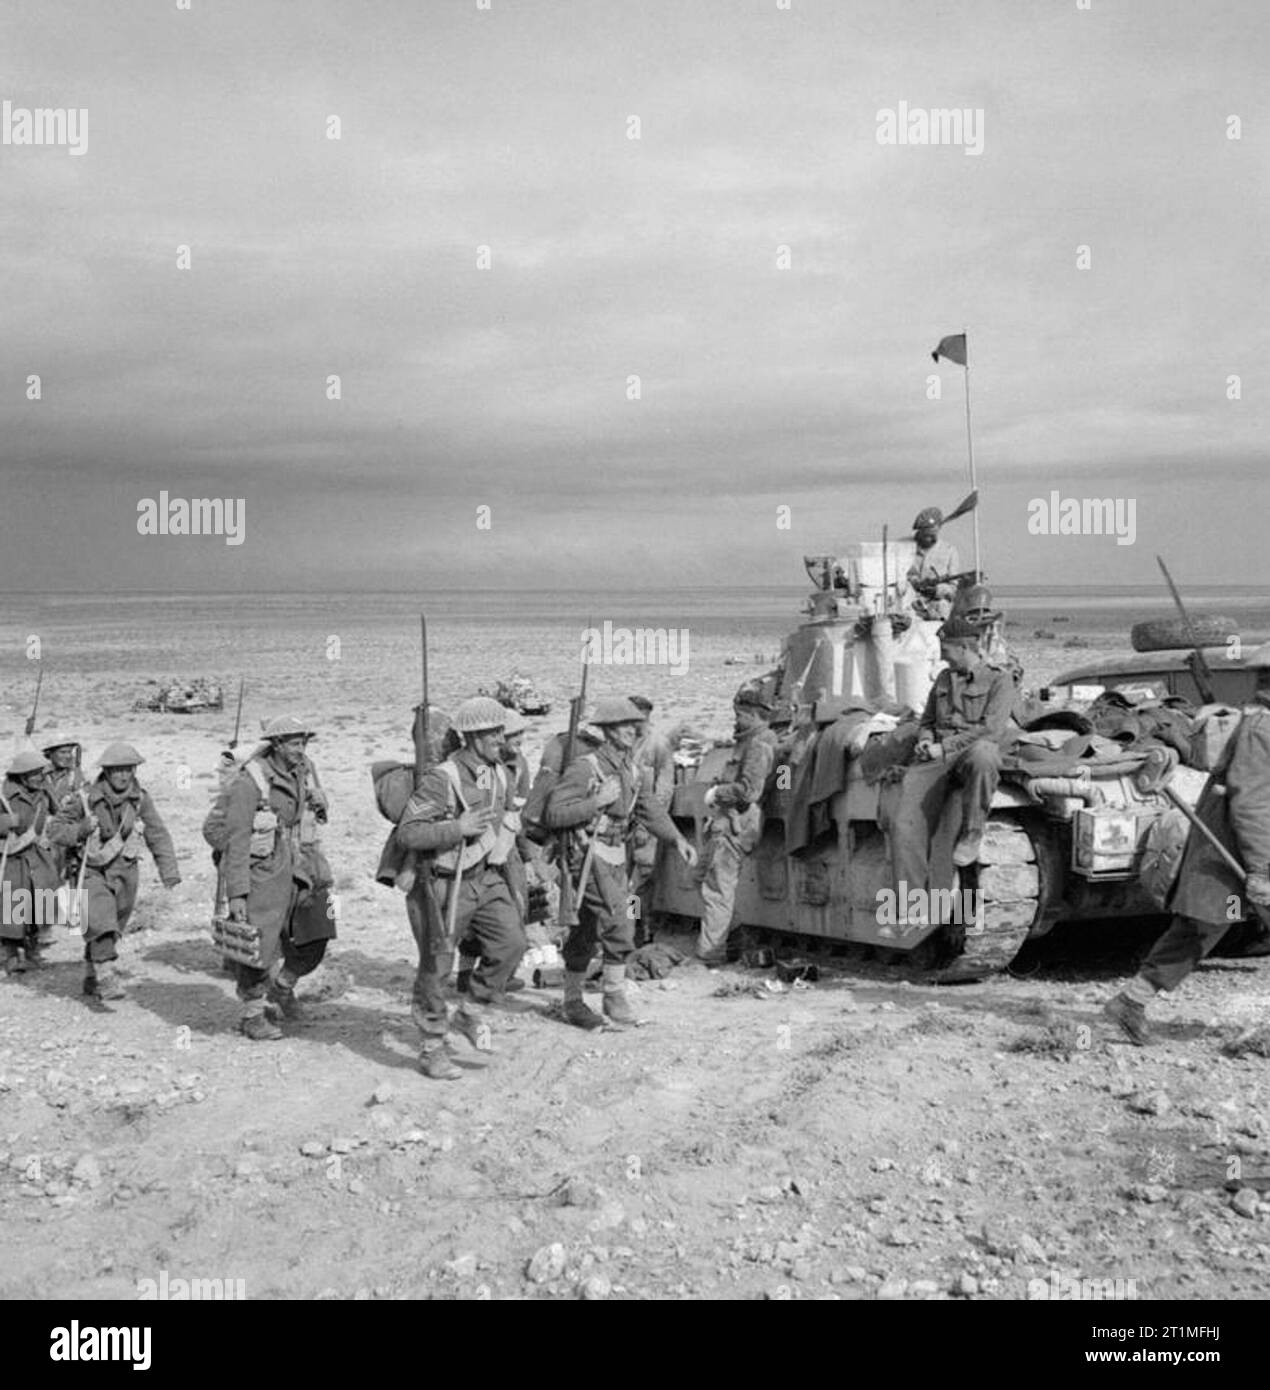 L'infanterie de la 2e division néo-zélandaise des liens avec Matilda chars de la garnison de Tobrouk lors de l'opération 'Crusader', la Libye, le 2 décembre 1941. Après certains des plus durs combats de la campagne d'infanterie Nord Arican, de la 2e division néo-zélandaise des liens avec Matilda chars de la garnison de Tobrouk. Les néo-zélandais avait combattu le long de la route côtière, pour soulager et mettre fin à l'Tobrouk huit mois de siège. Banque D'Images